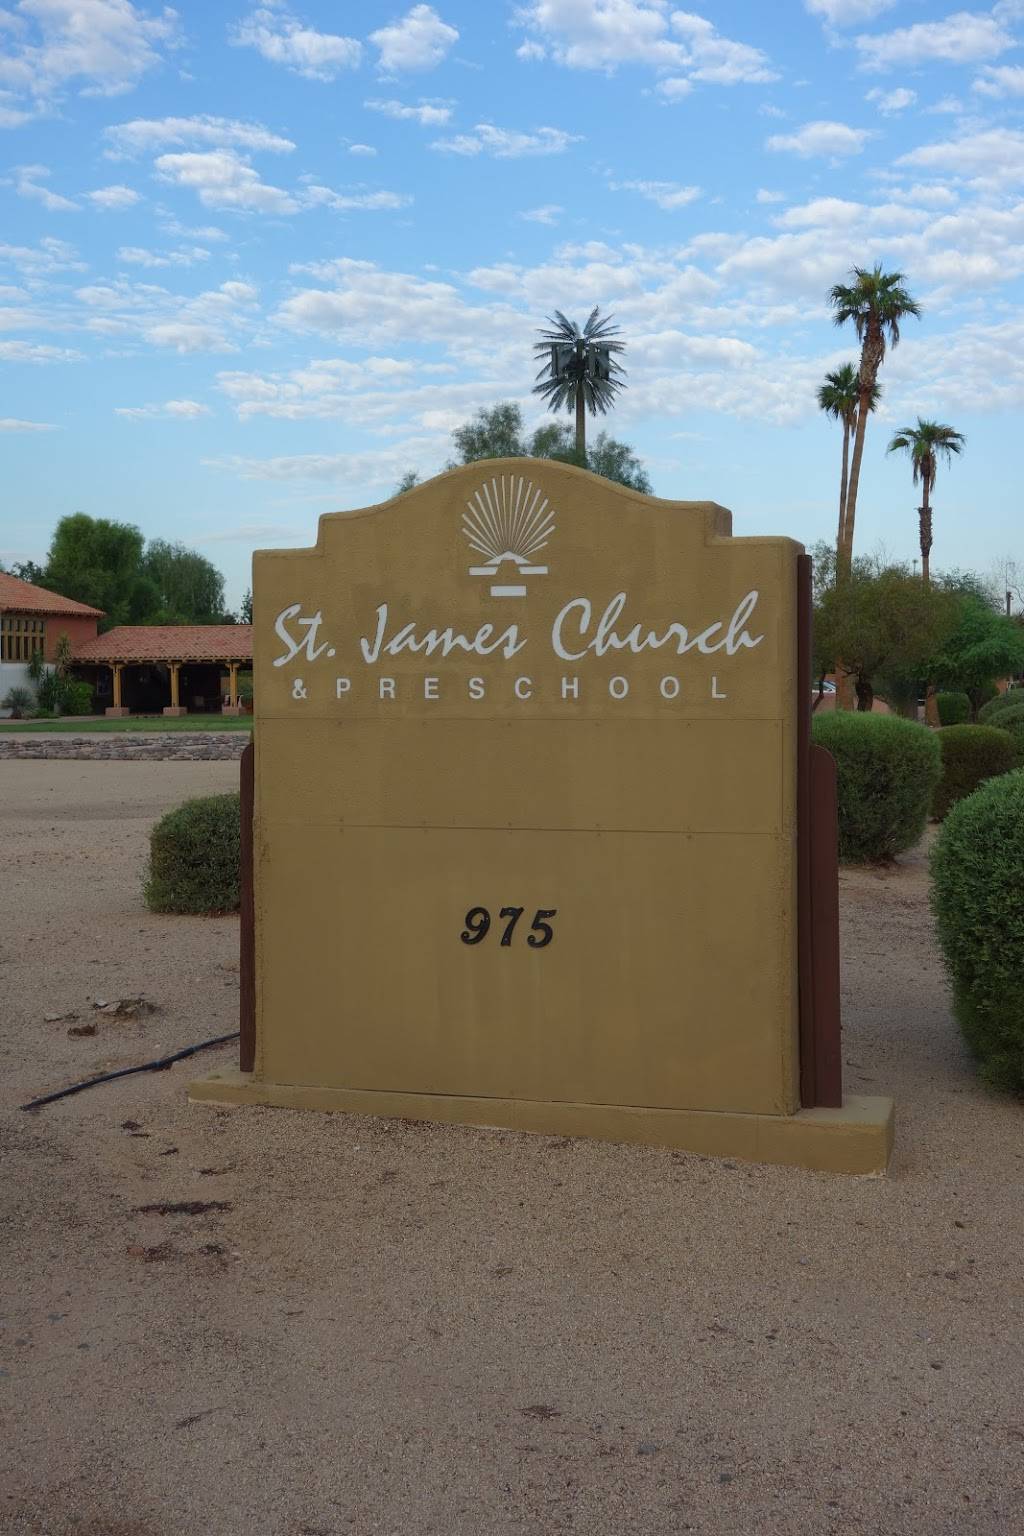 St. James Episcopal Church & Preschool | 975 E Warner Rd, Tempe, AZ 85284, USA | Phone: (480) 345-2686